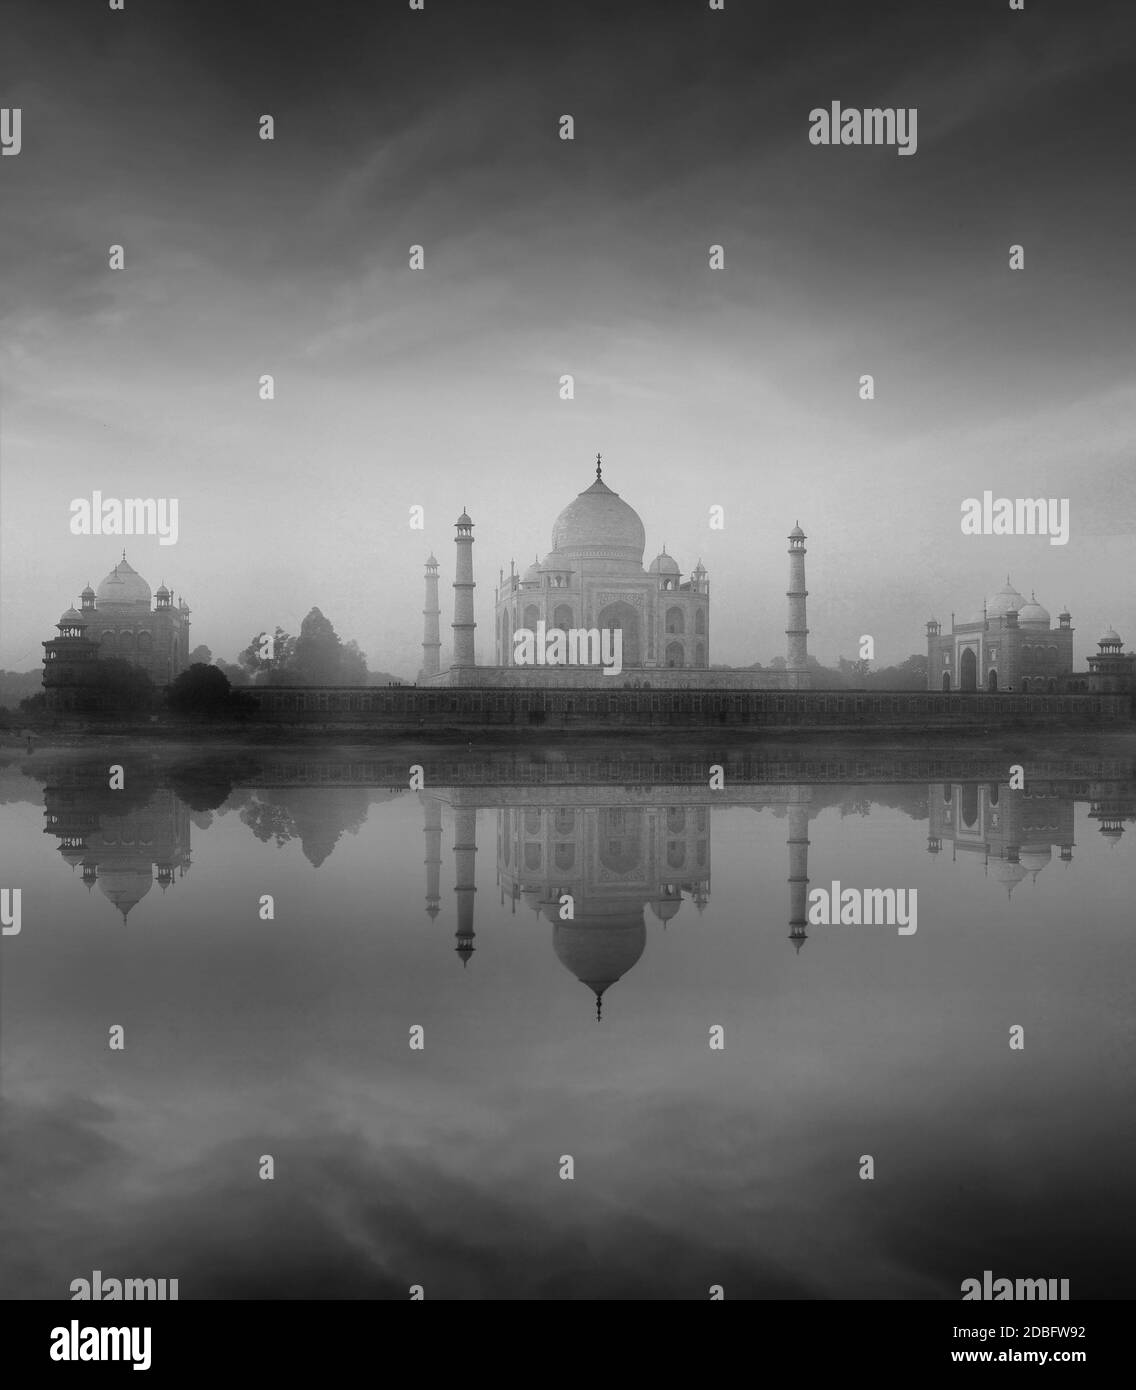 Taj Mahal avec réflexion dans la rivière Yamuna dans le brouillard, symbole indien - Inde Voyage arrière-plan. Agra, Uttar Pradesh, Inde. Version noir et blanc Banque D'Images